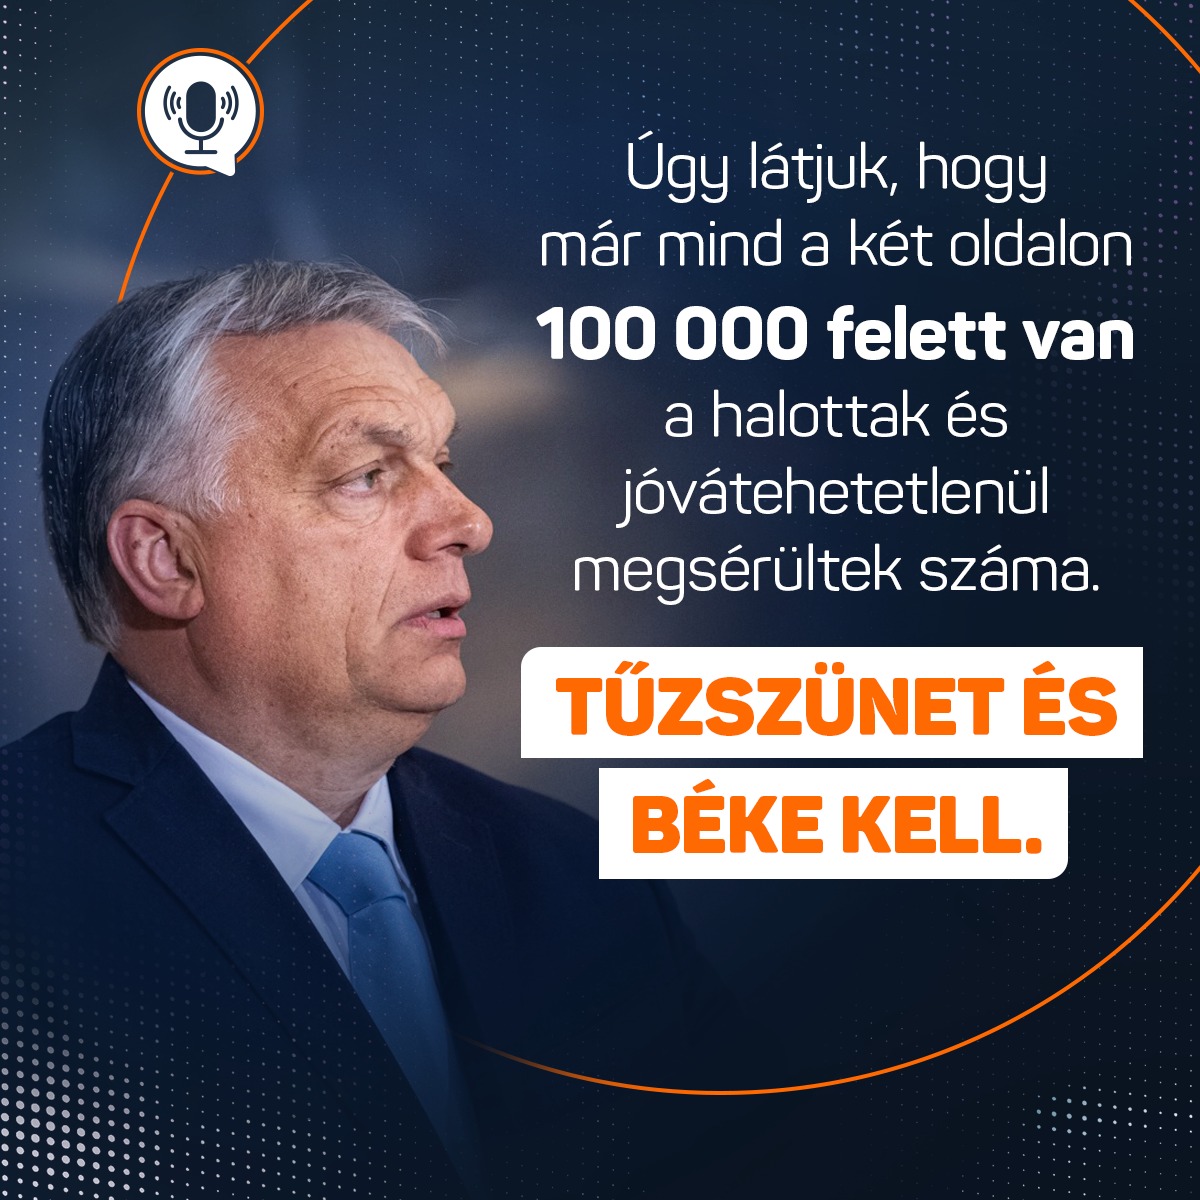 Orbán Viktor a Kossuth Rádióban:  A háború egy év után sokkal durvább és kegyetlenebb, mint ahogyan kezdődött. Árvák, özvegyek, tehát a legsúlyosabb emberi tragédiák tömegei állnak elő nap mint nap. A legvisszafogottabban is azt kell mondjam, hogy a nyugati világ vezetői háborús lázban égnek. Azonnali tűzszünetre és békére van szükség!